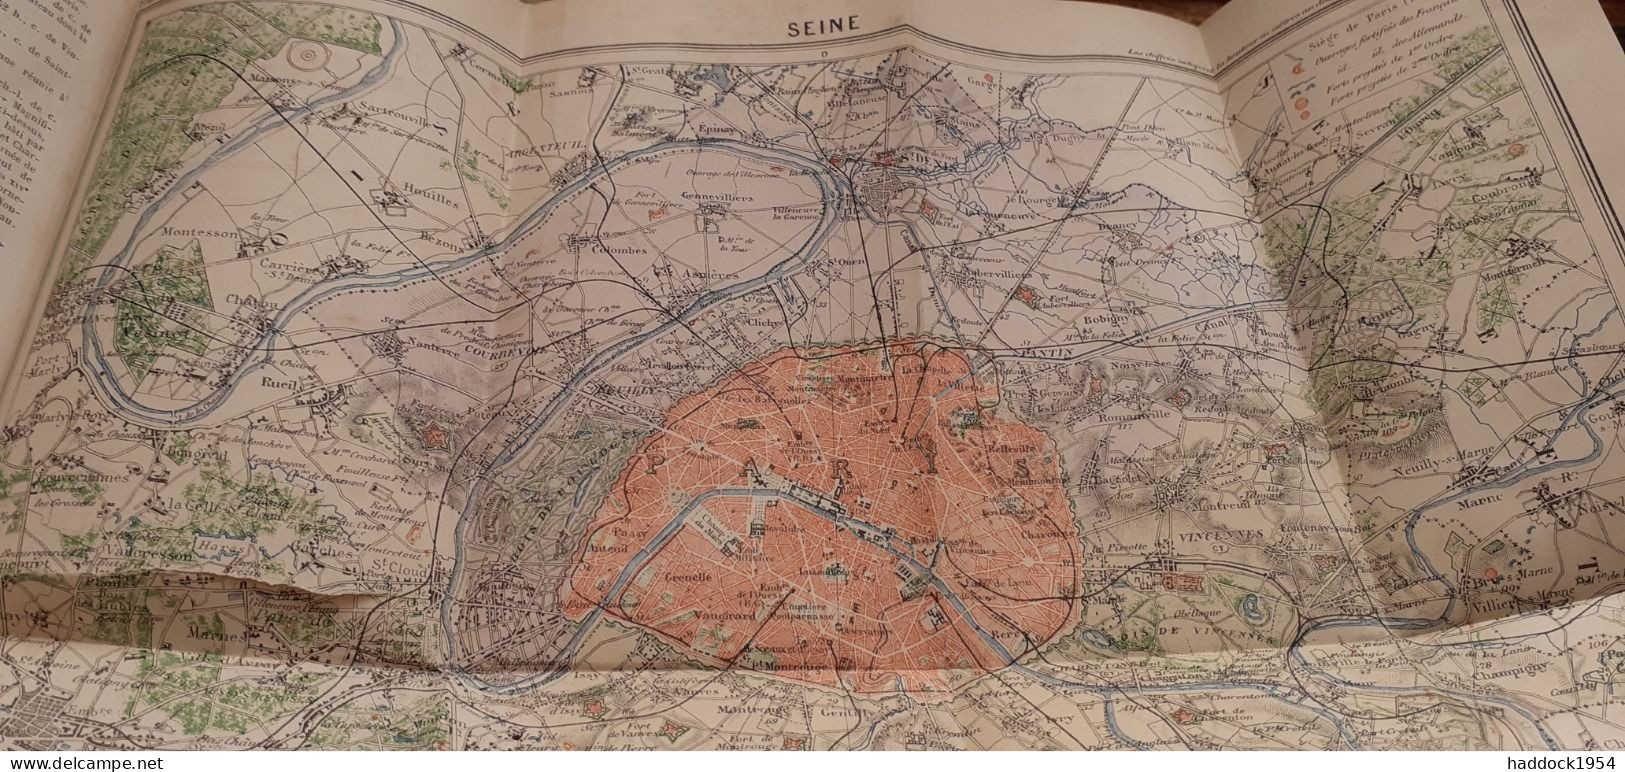 géographie de la seine ADOLPHE JOANNE hachette 1881